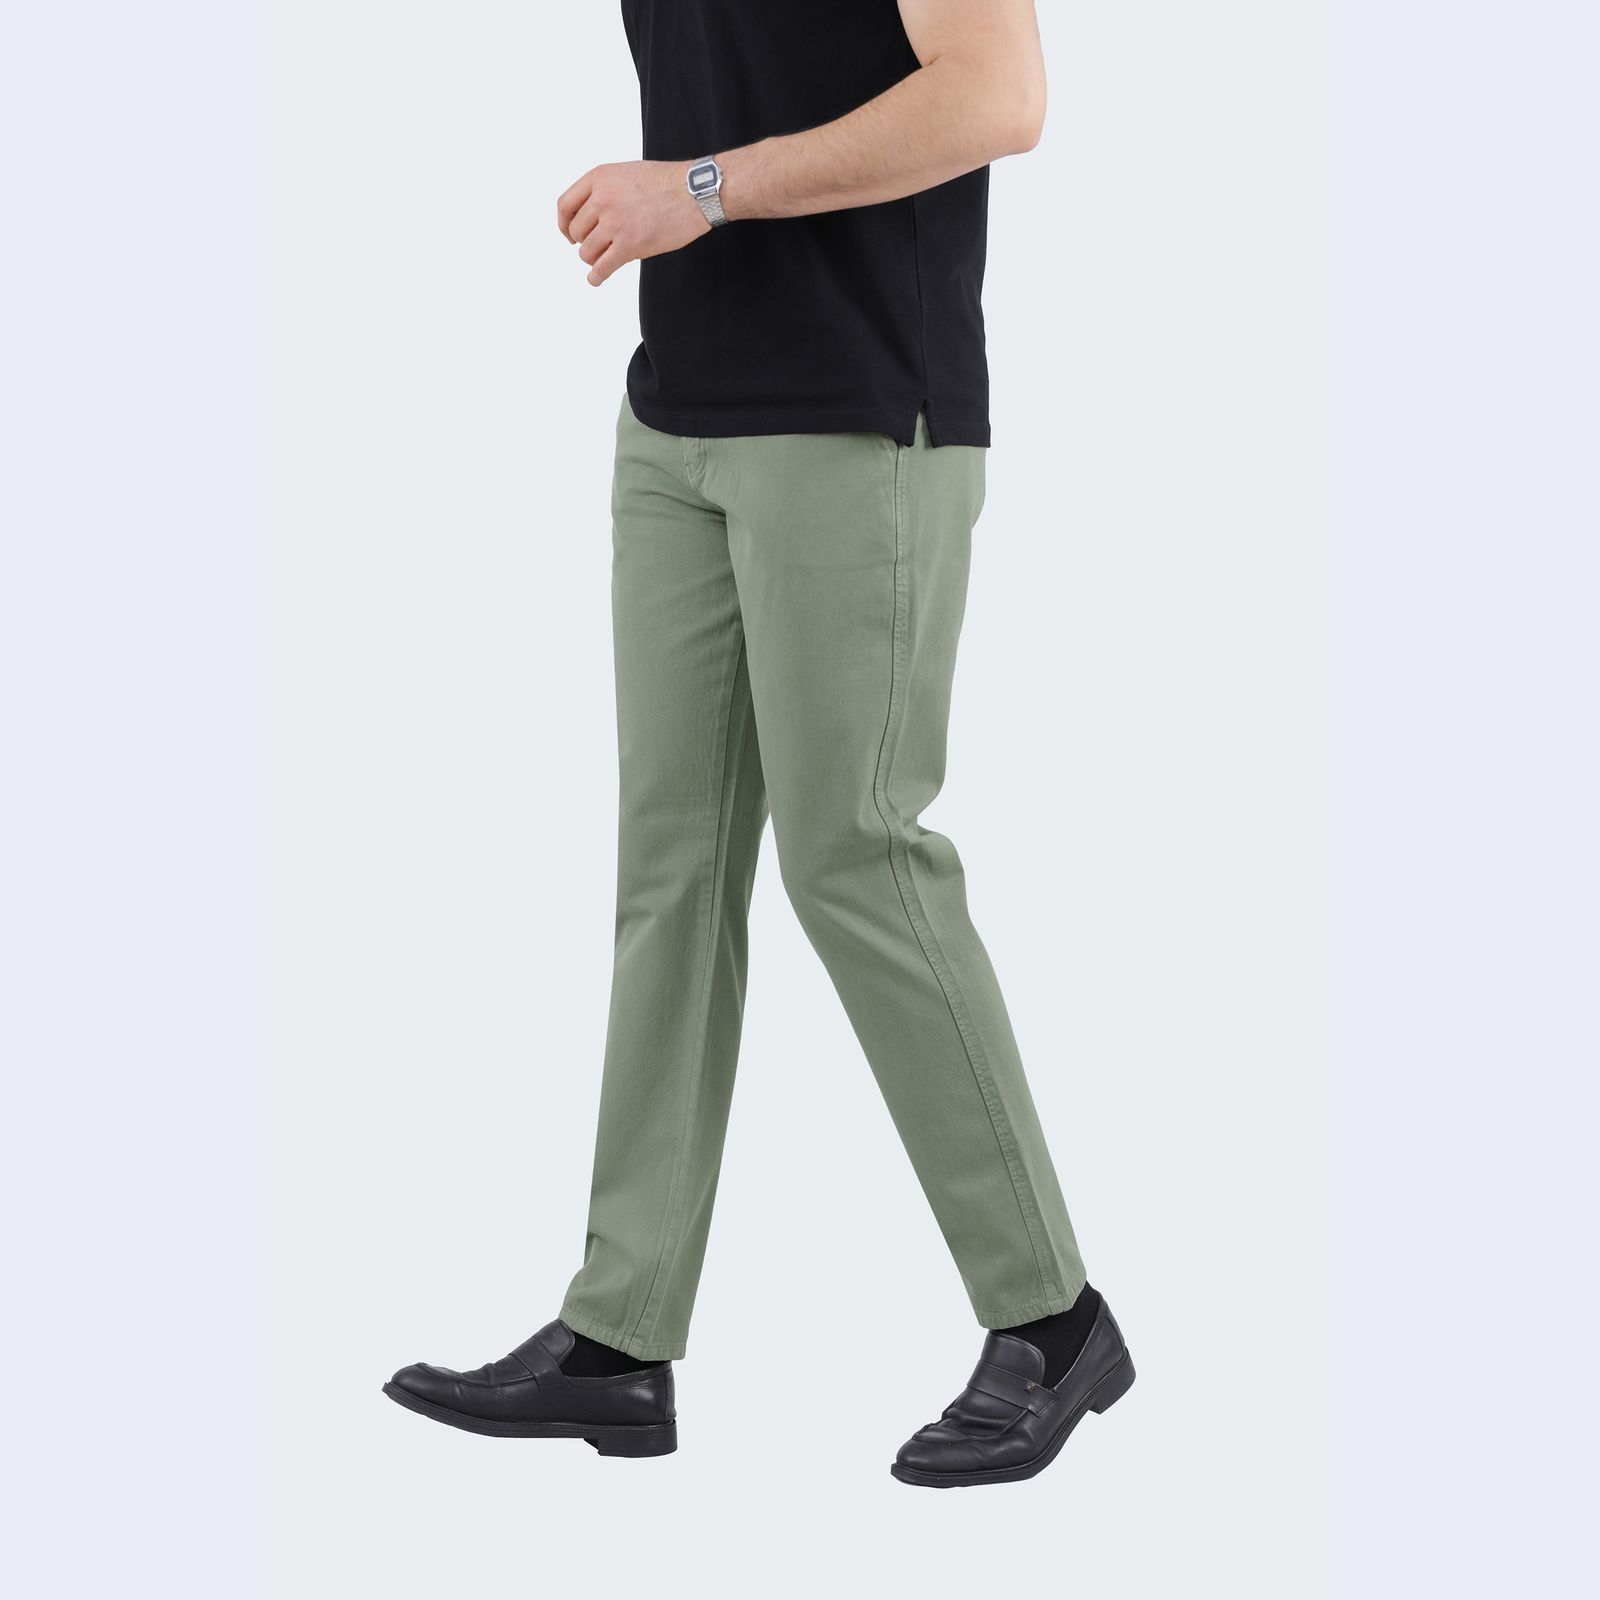 شلوار مردانه پاتن جامه مدل کتان کد 101221020006377 رنگ سبز روشن -  - 3